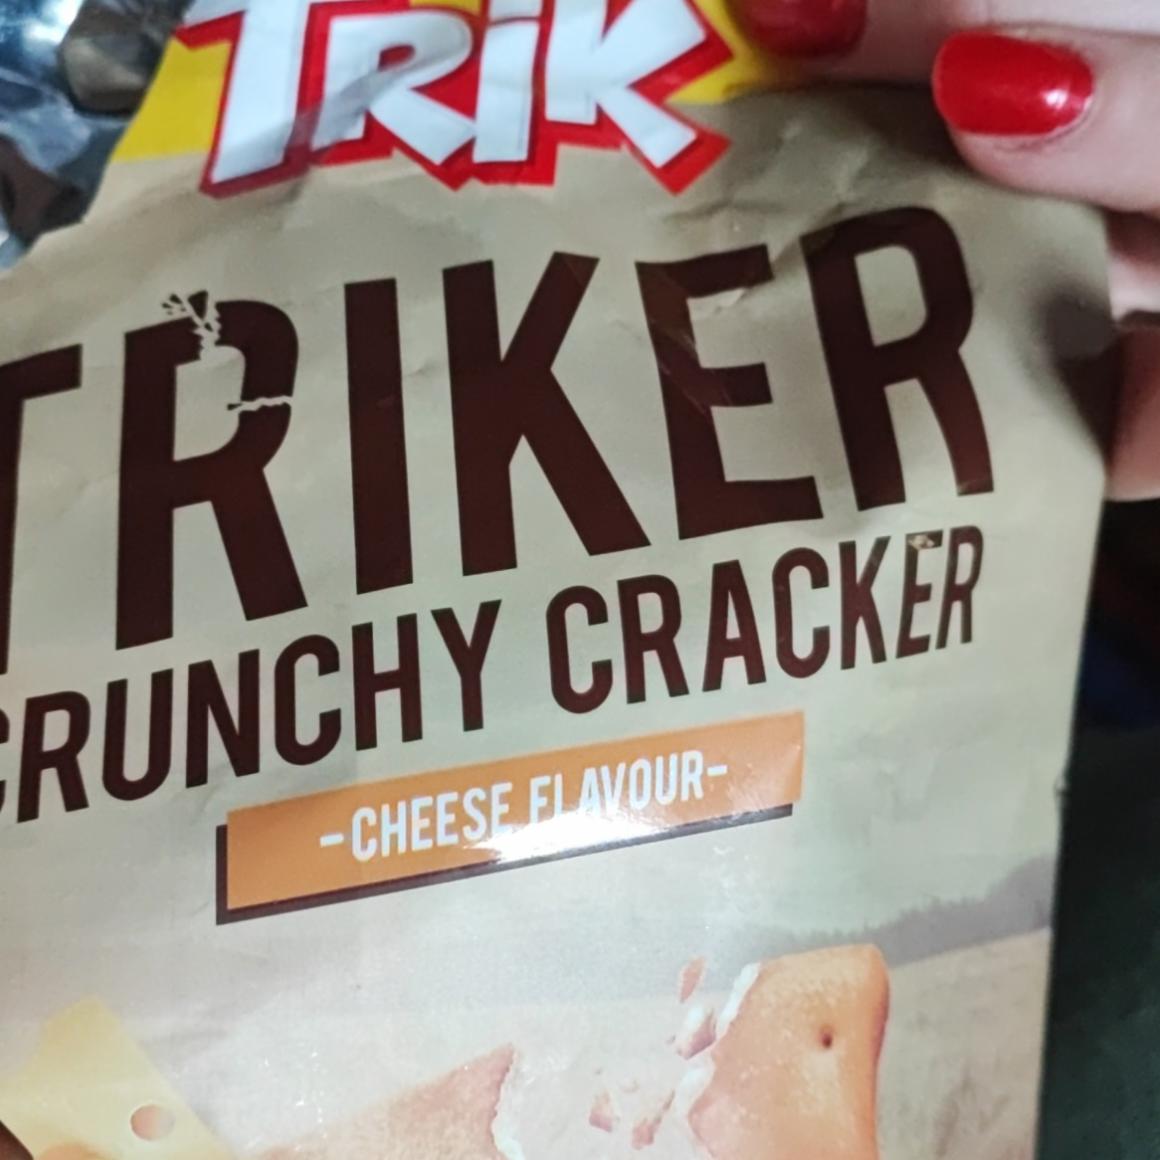 Fotografie - Triker Crunchy cracker cheese flavour